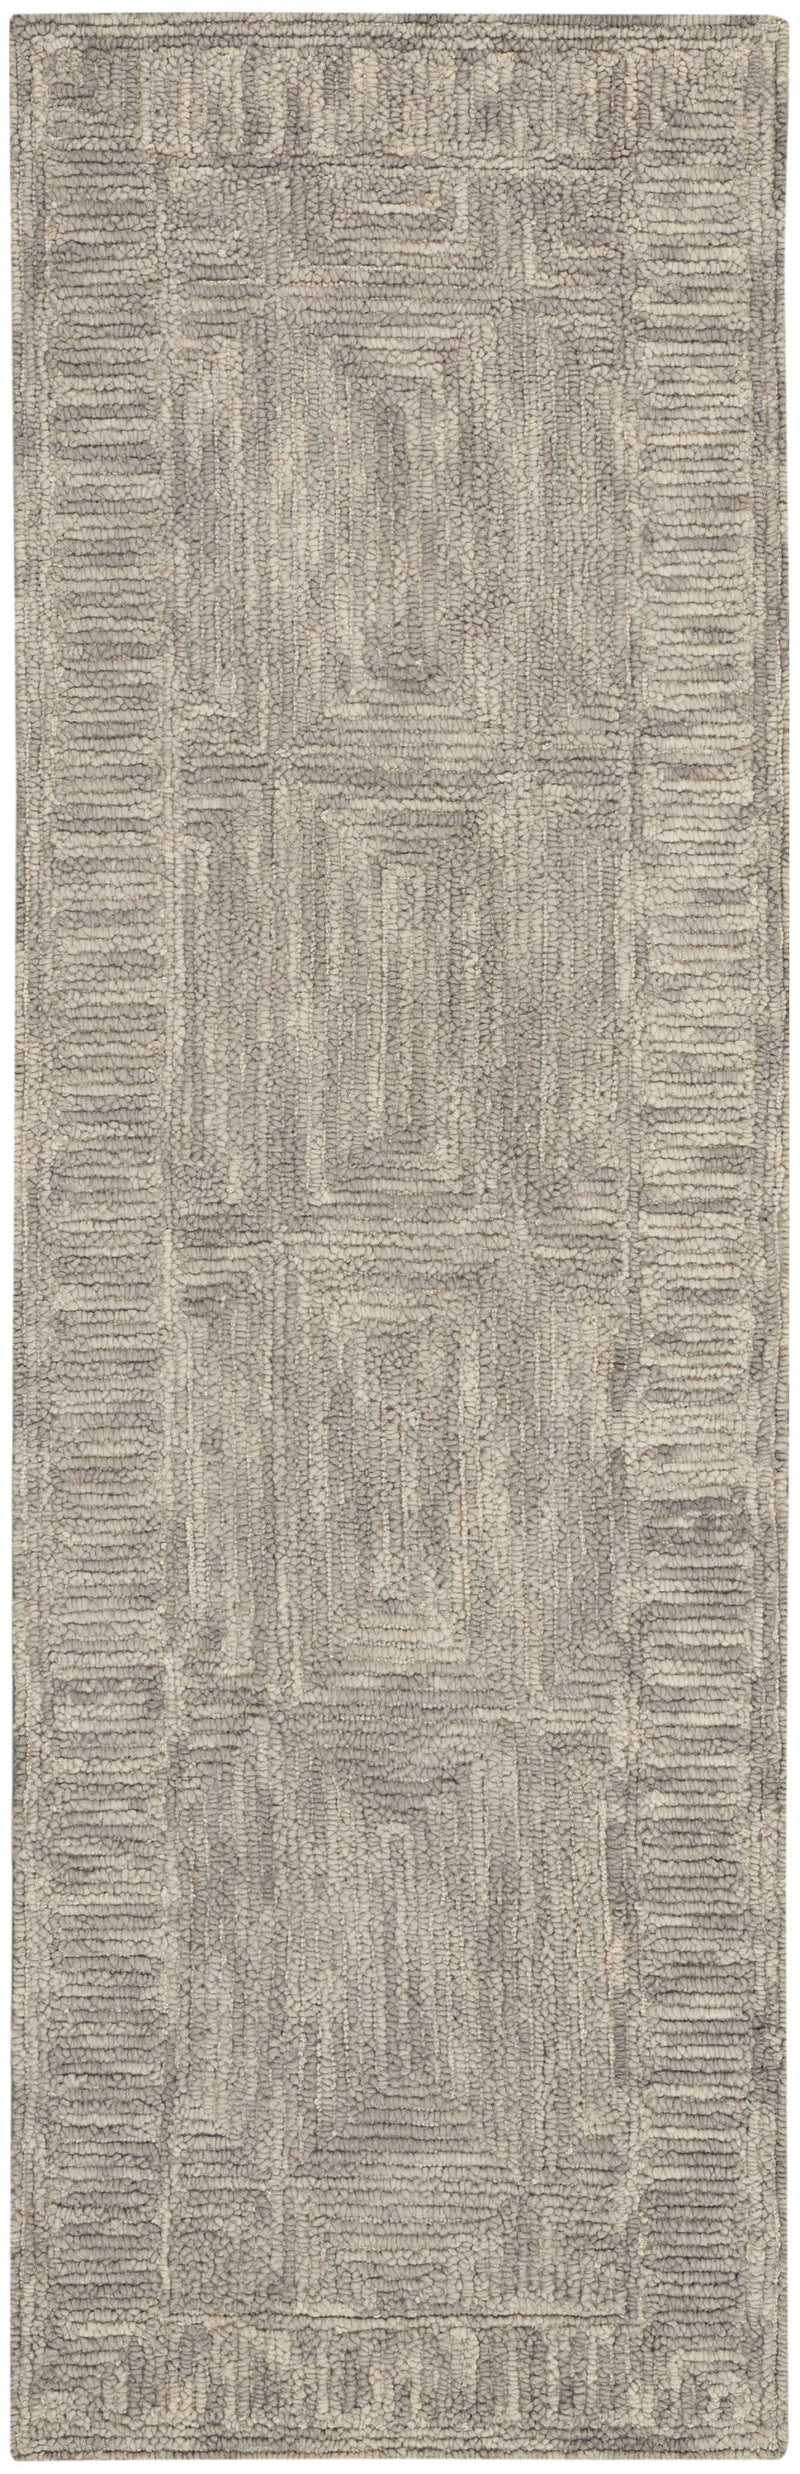 media image for colorado handmade grey rug by nourison 99446786685 redo 2 297